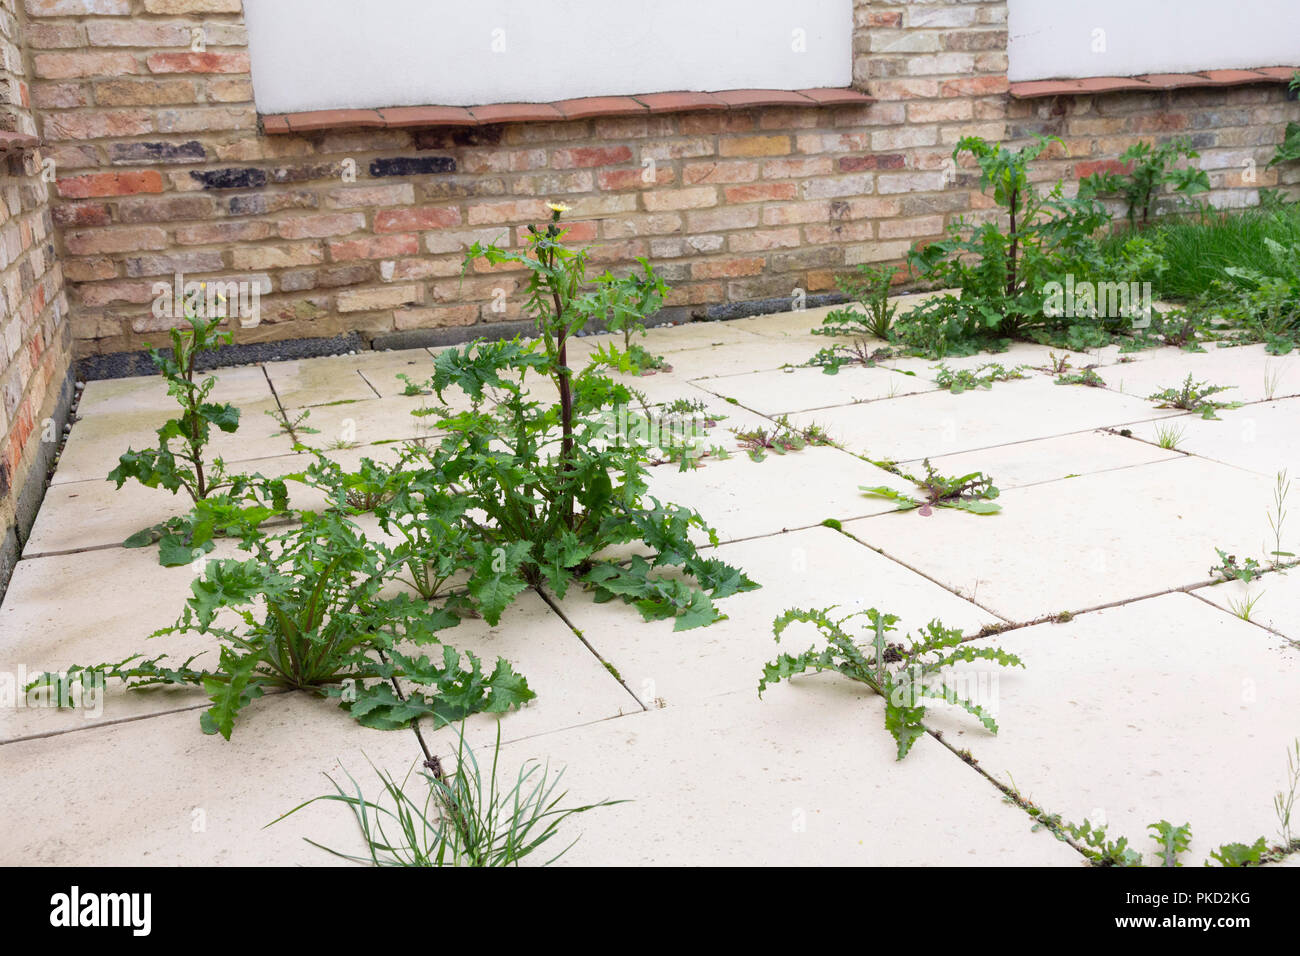 Las malas hierbas crecen en el patio pavimentado Foto de stock